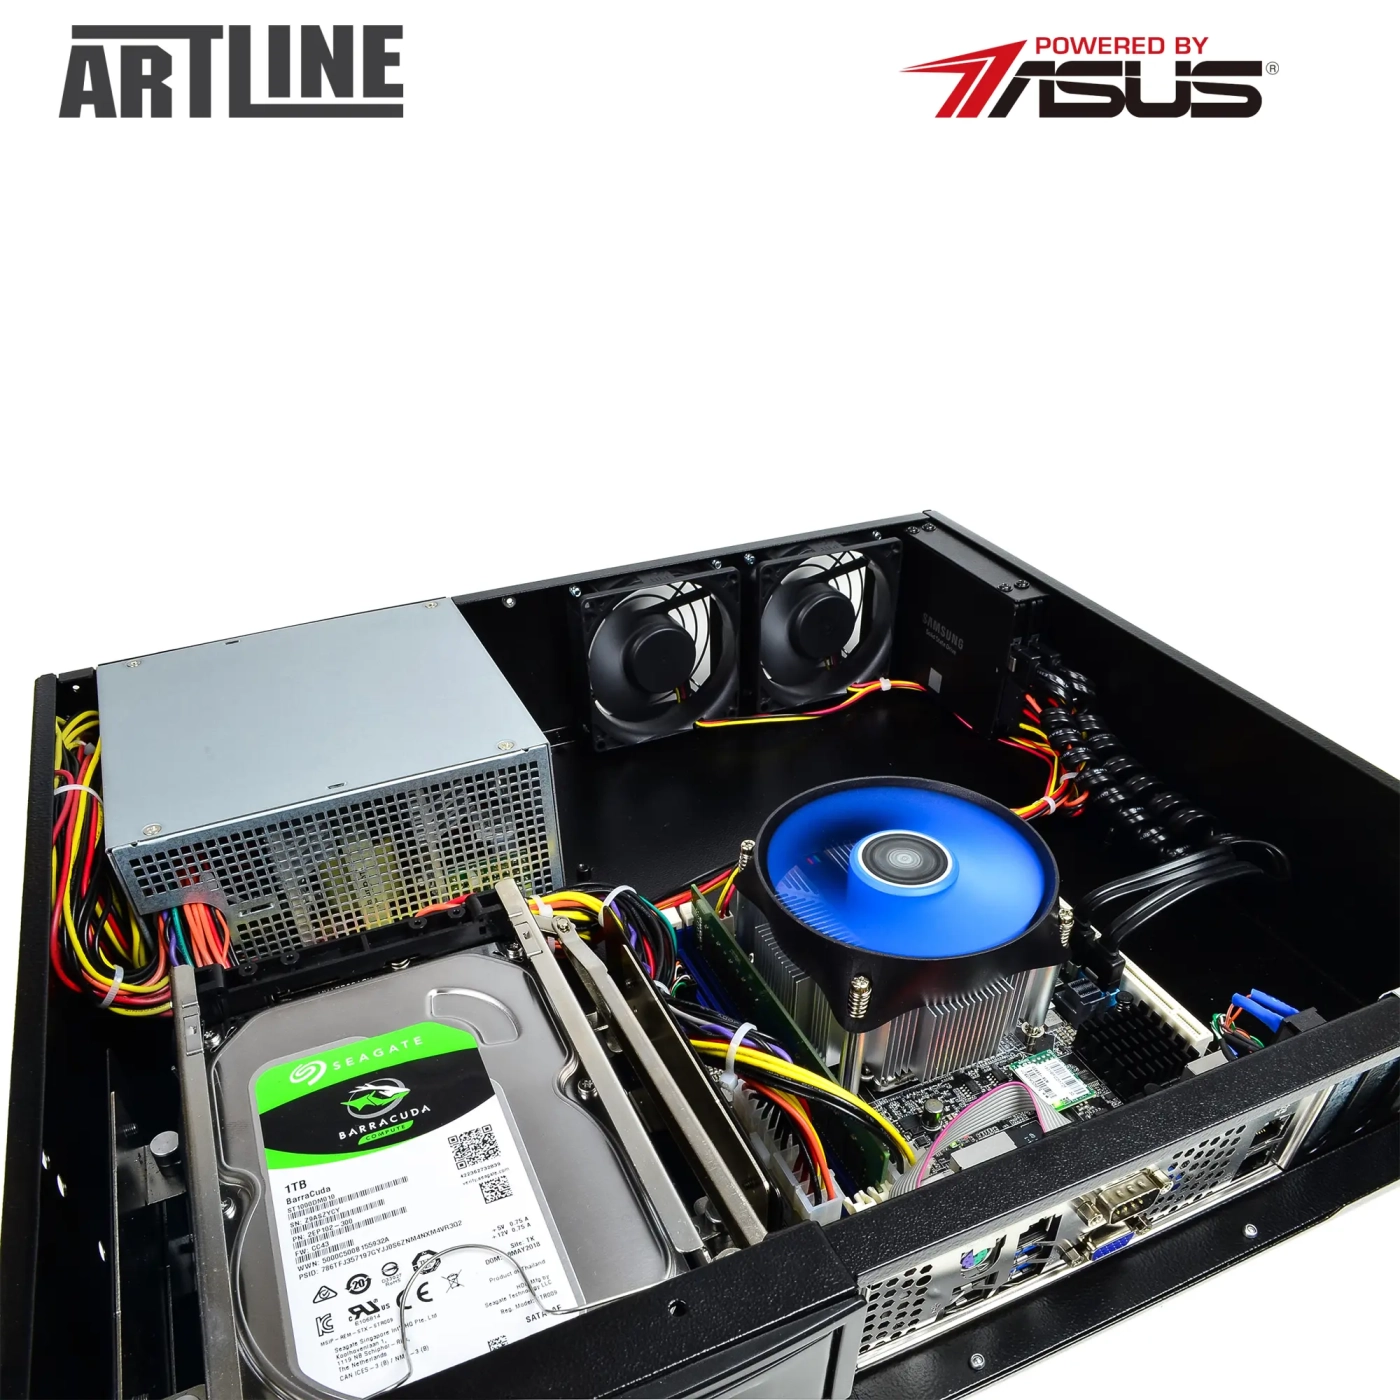 Купить Сервер ARTLINE Business R37 (R37v65) - фото 10